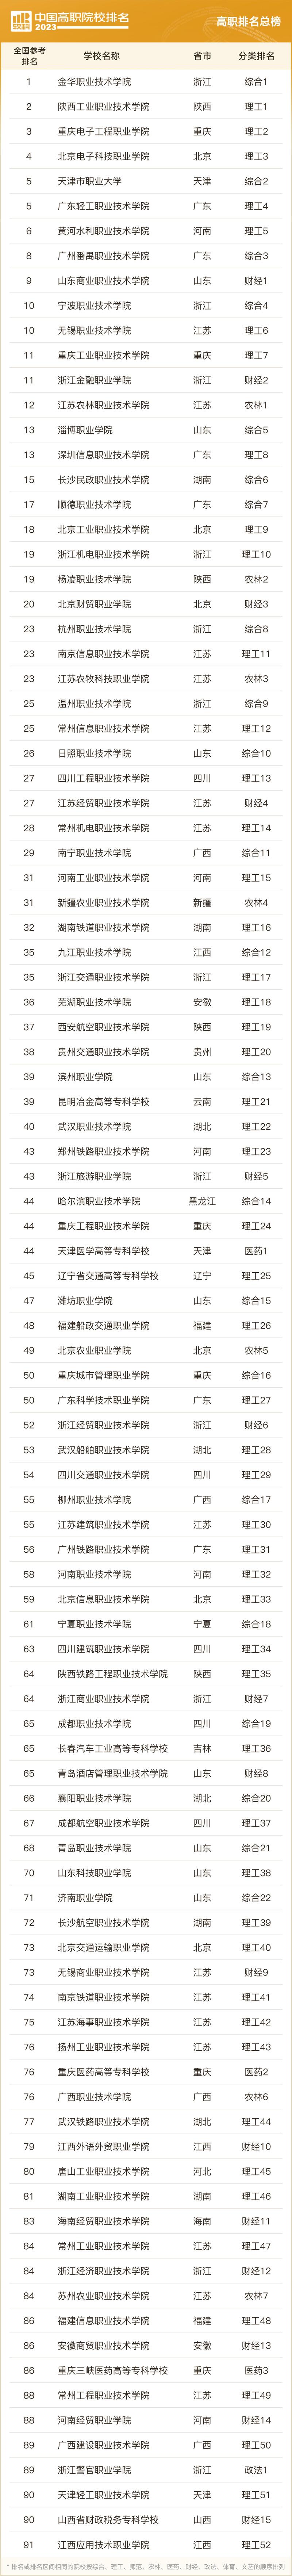 上海有18所高校上榜全国高校排名前十。（上海有18所高校上榜全国高校排名前十吗）